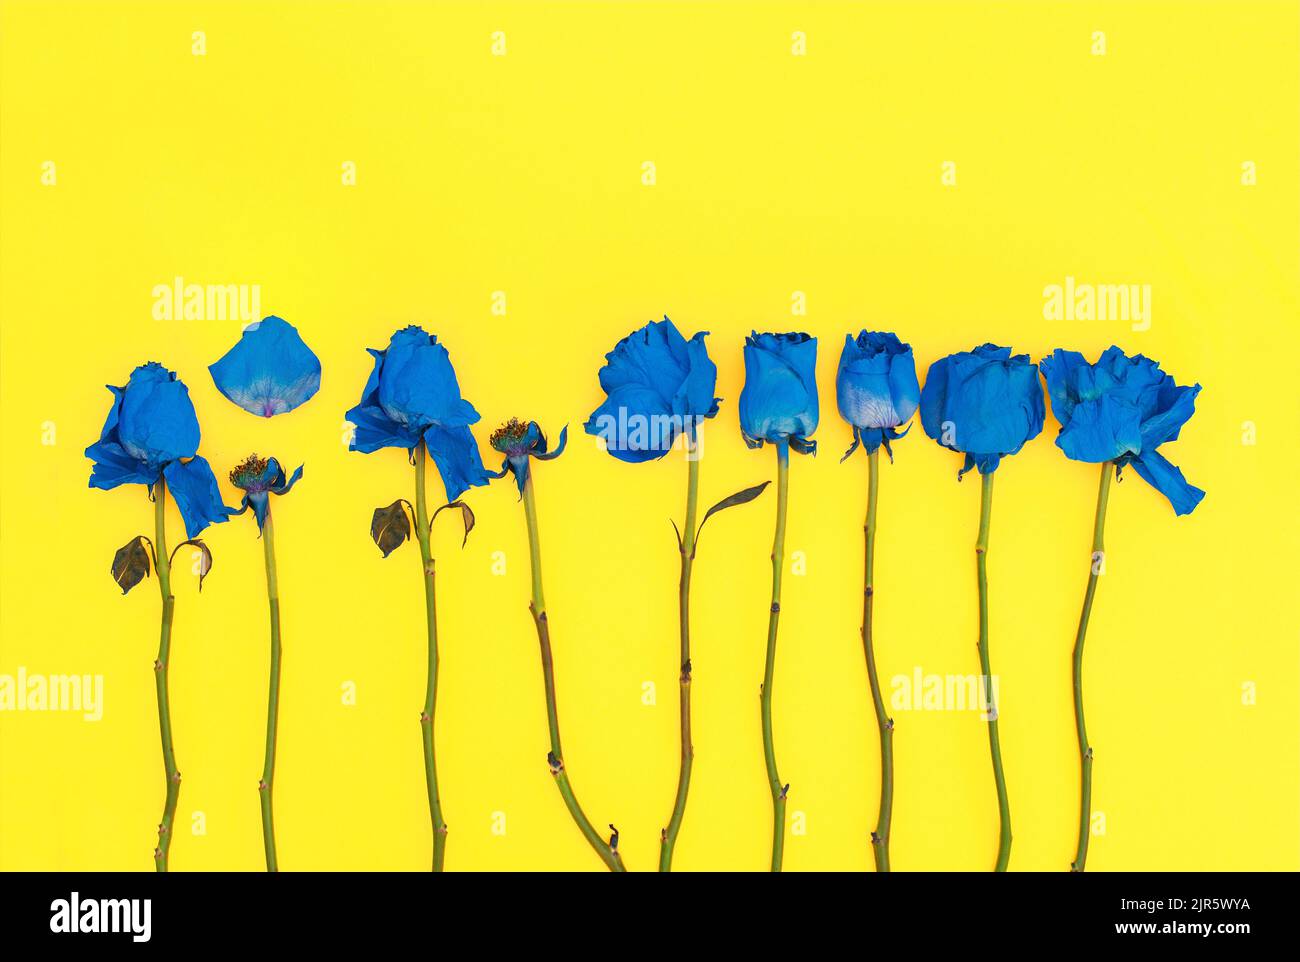 Gros plan de fleurs bleues sur fond jaune. Concept symbole ukrainien. Banque D'Images